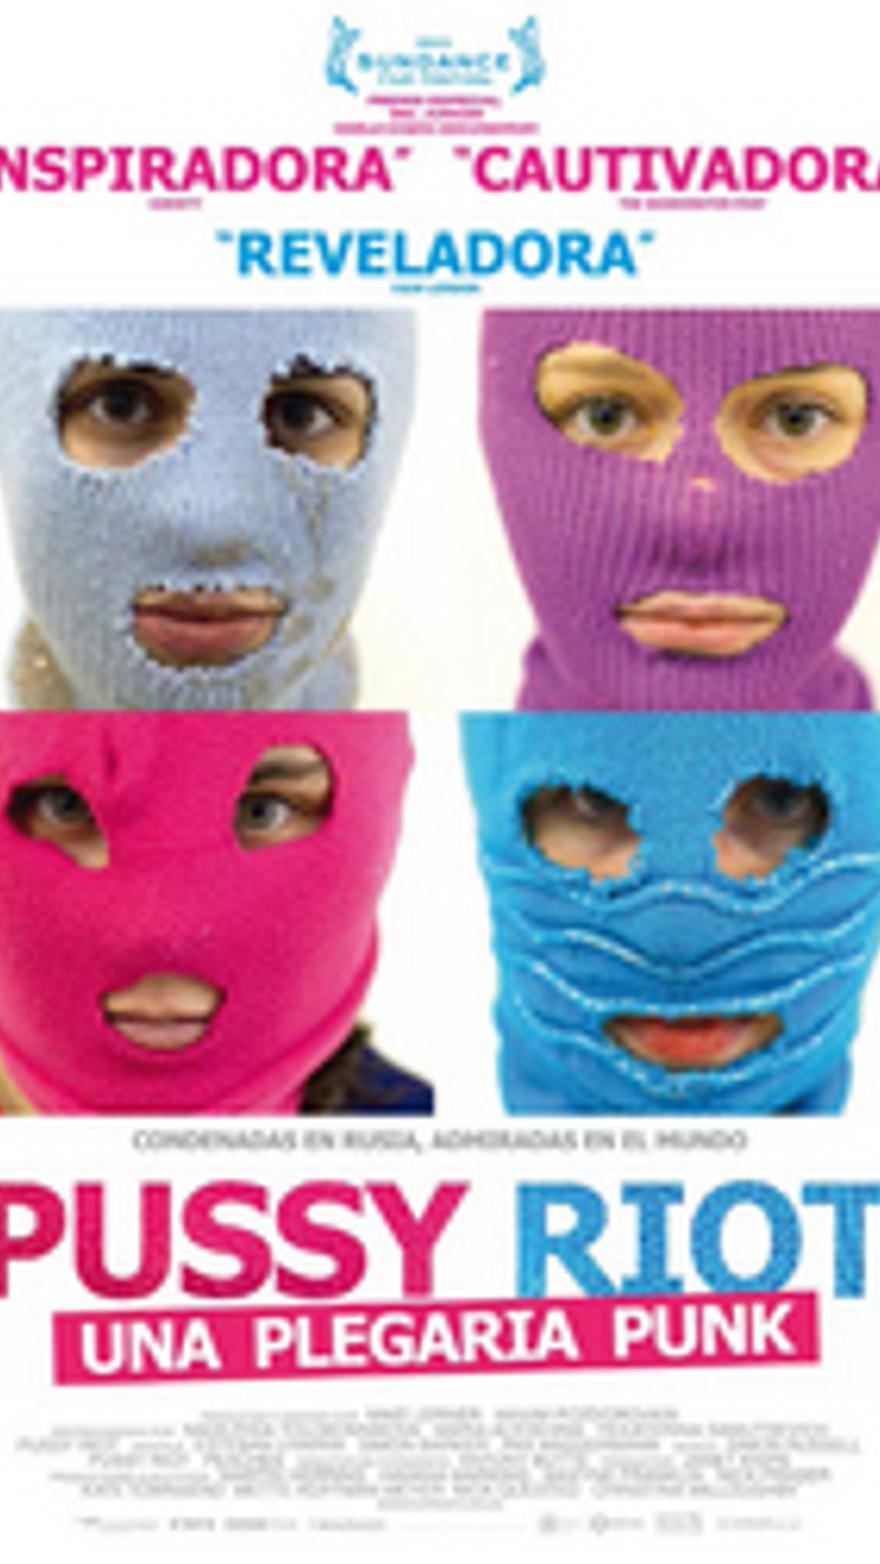 Pussy Riot: una plegaria punk